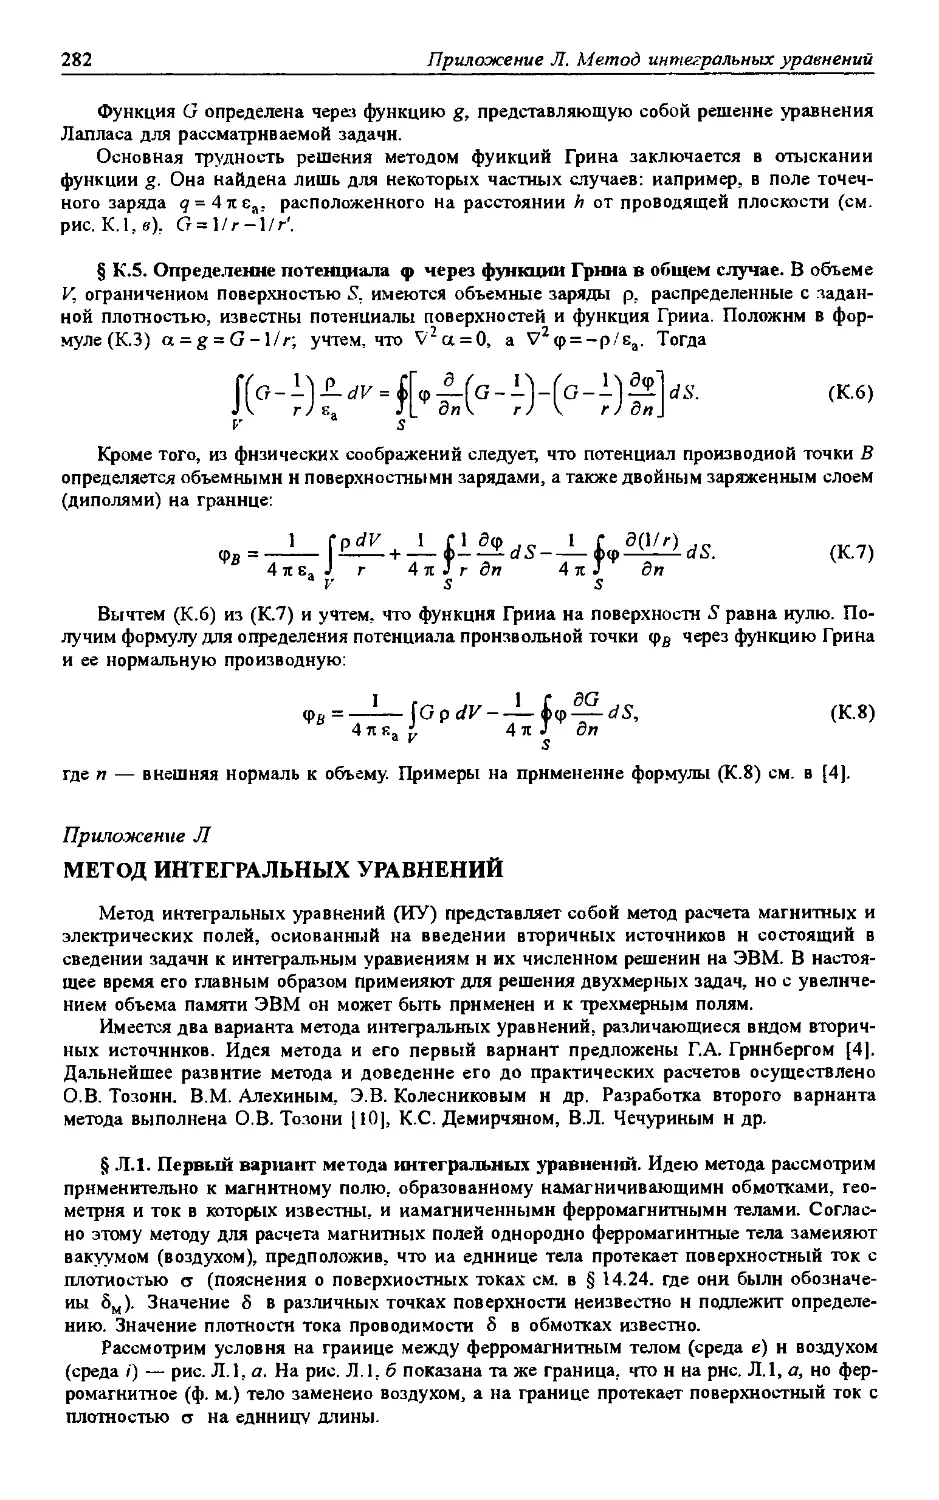 К.5.
Л. Метод интегральных уравнений